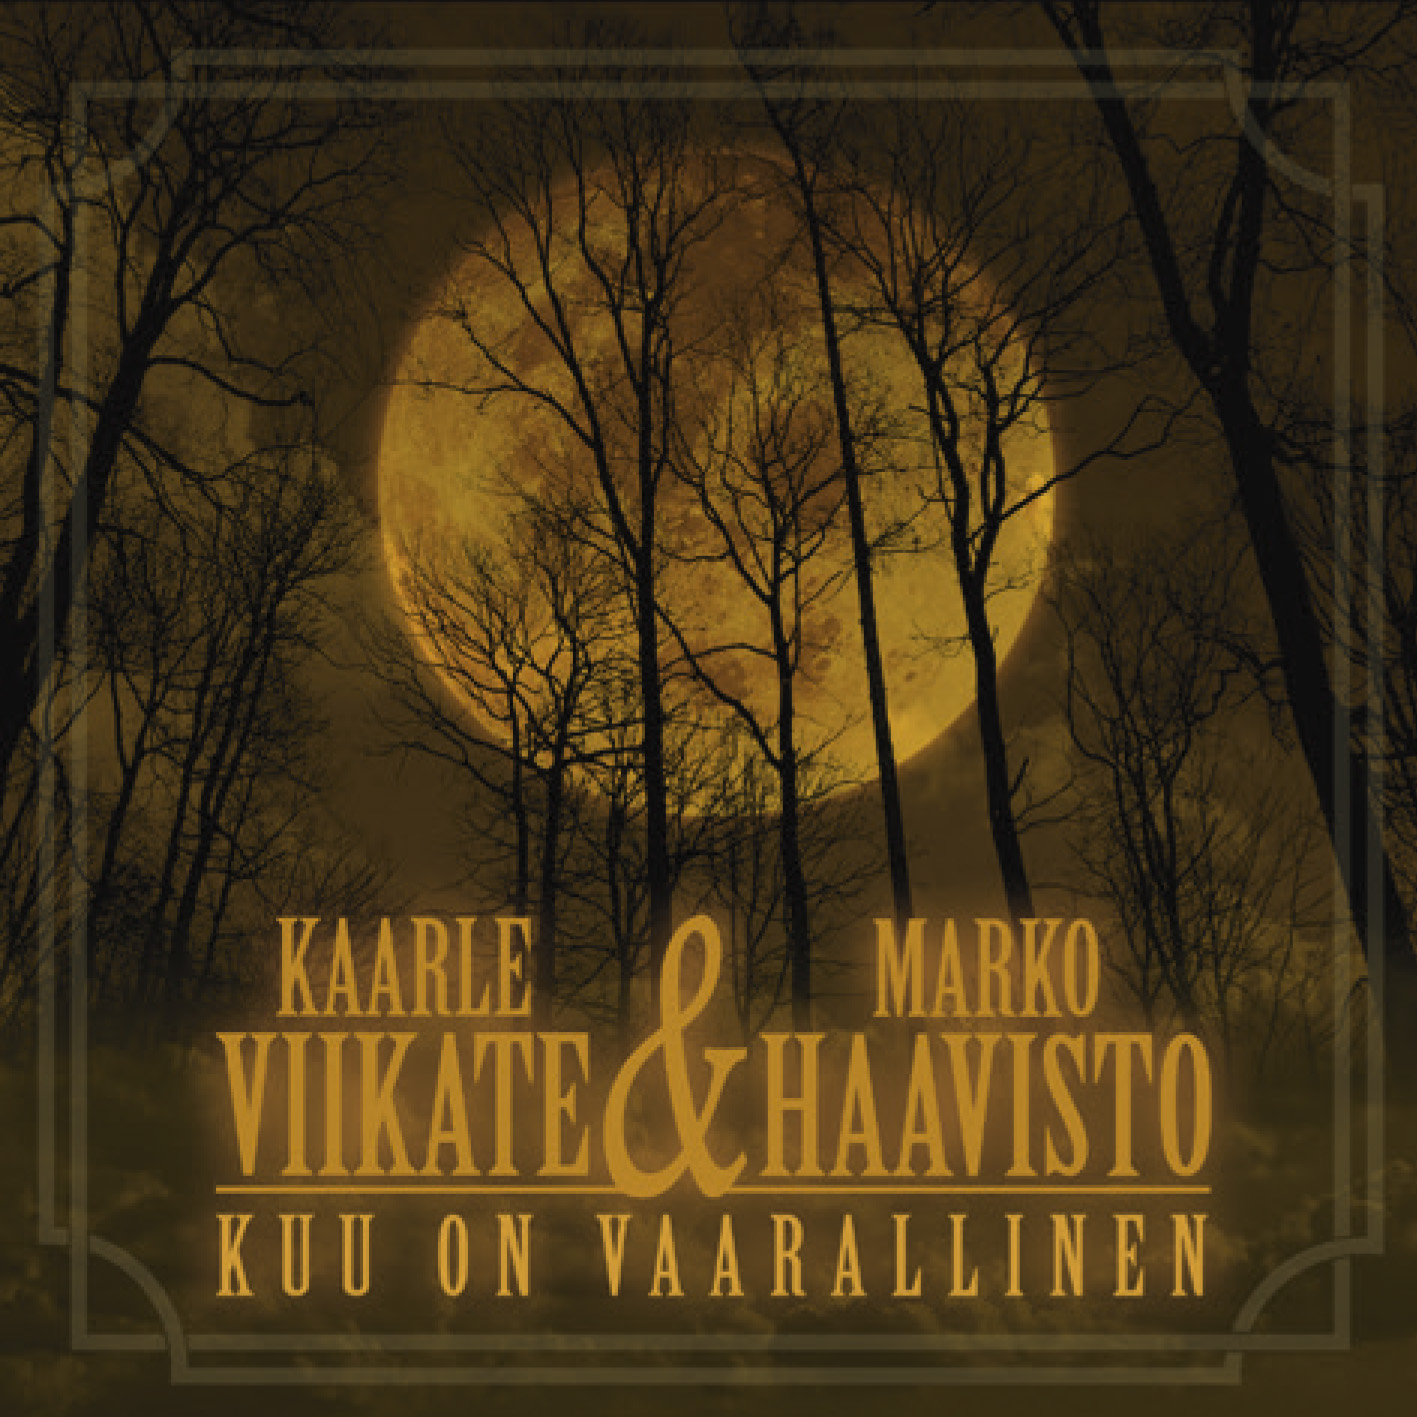 Kaarle Viikate & Marko Haavisto - Kuu on vaarallinen - CD